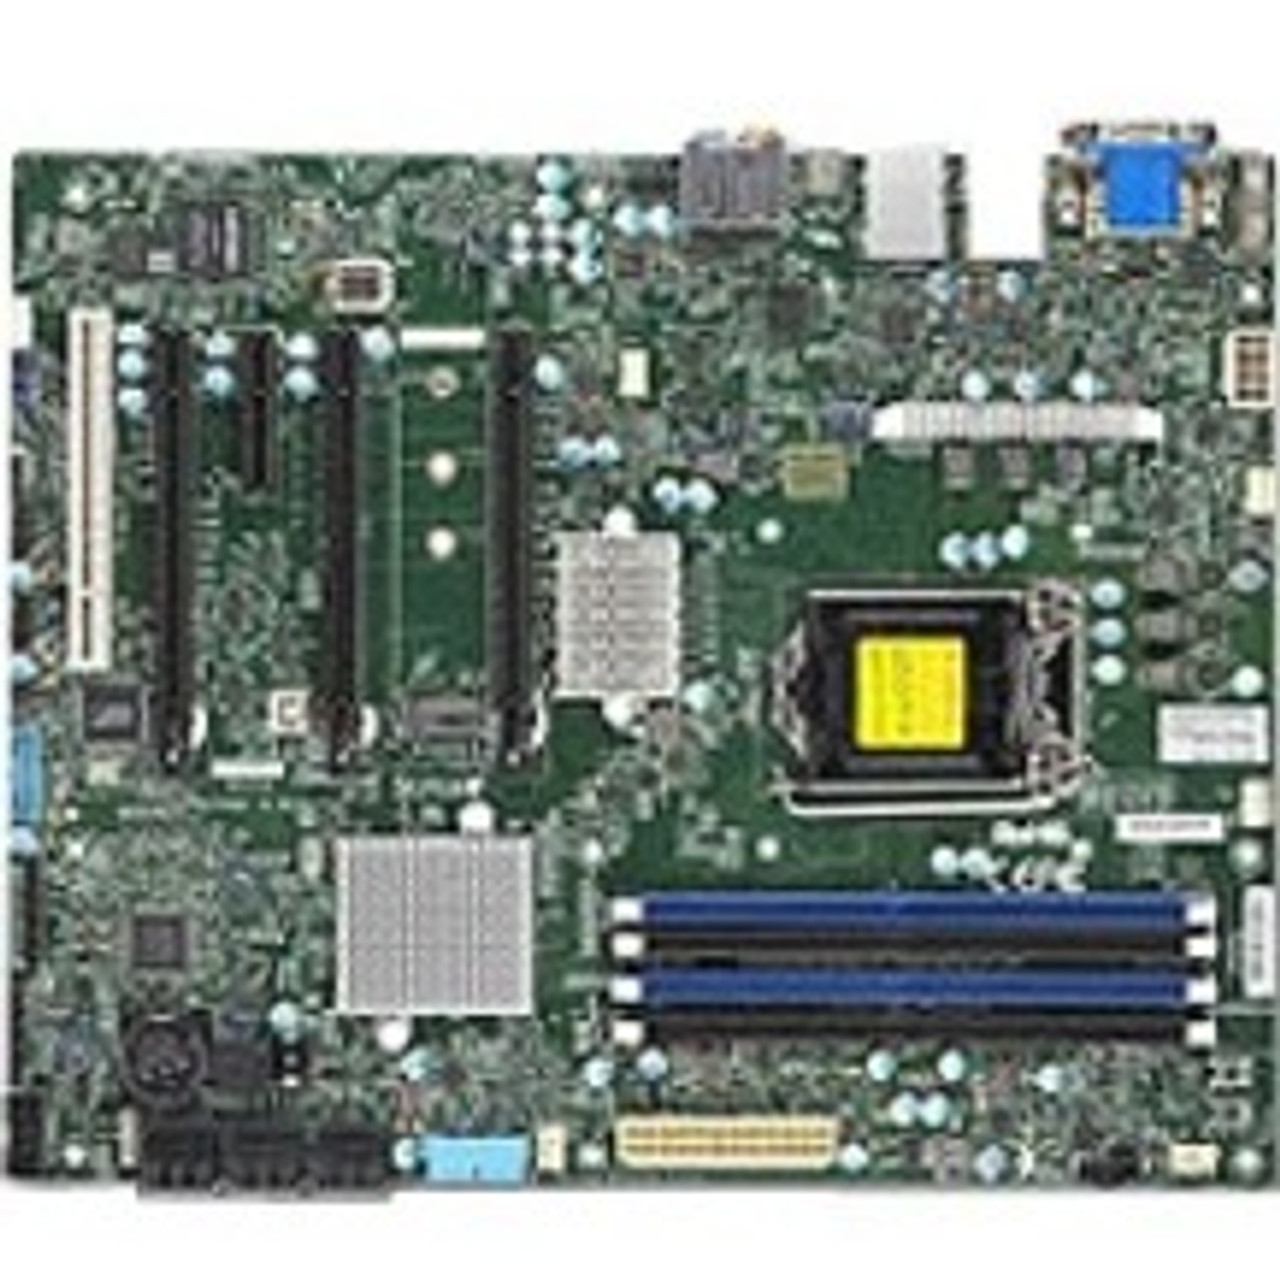 Supermicro X11SAT-F Workstation Motherboard - Intel C236 Chipset - Socket H4 LGA-1151 - ATX - MBD-X11SAT-F-O